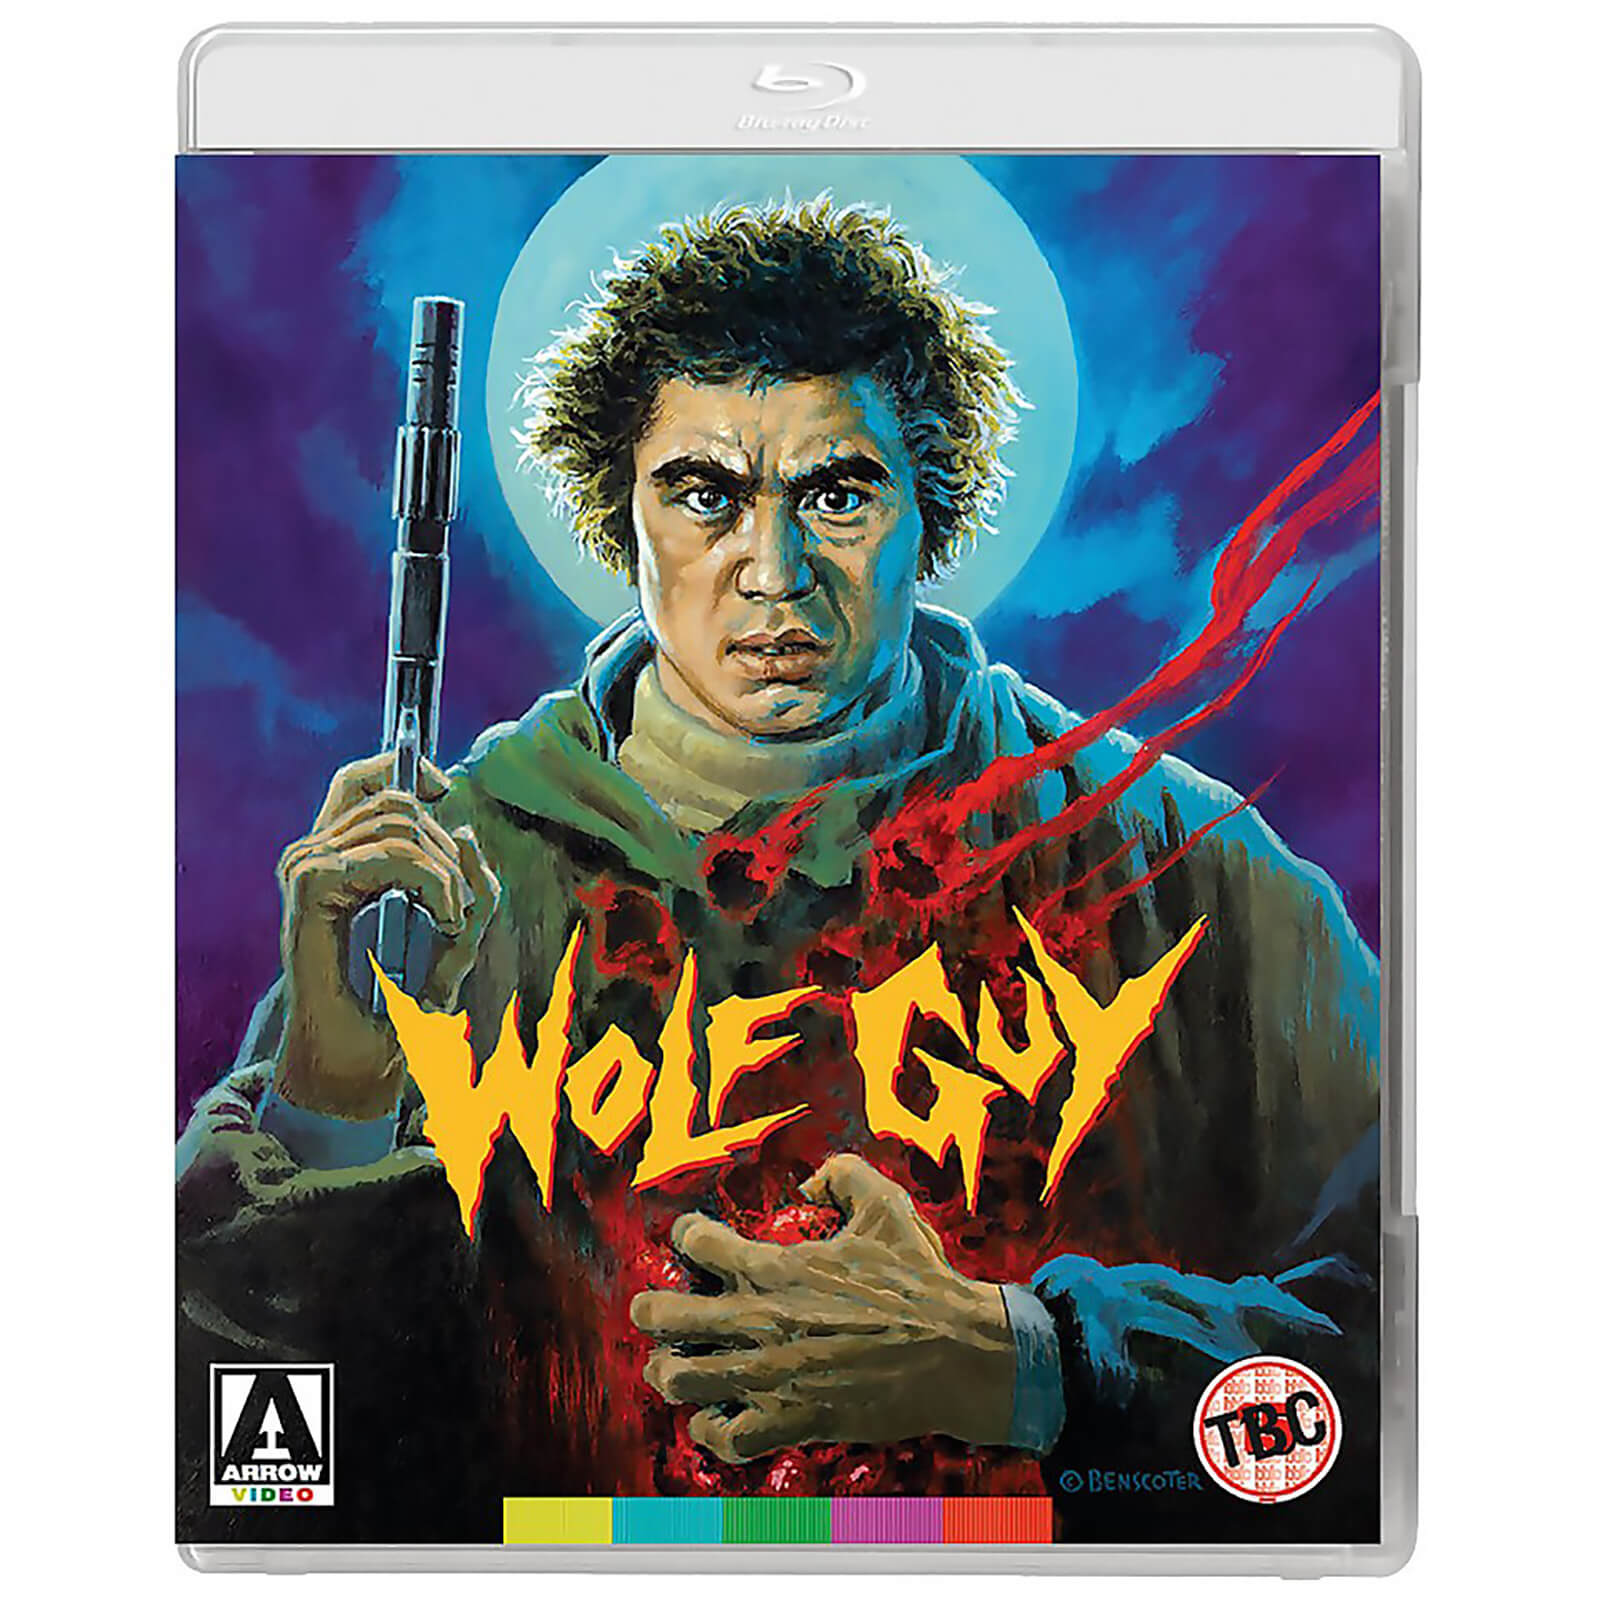 Wolfguy - Doppelformat (mit DVD) von Arrow Video